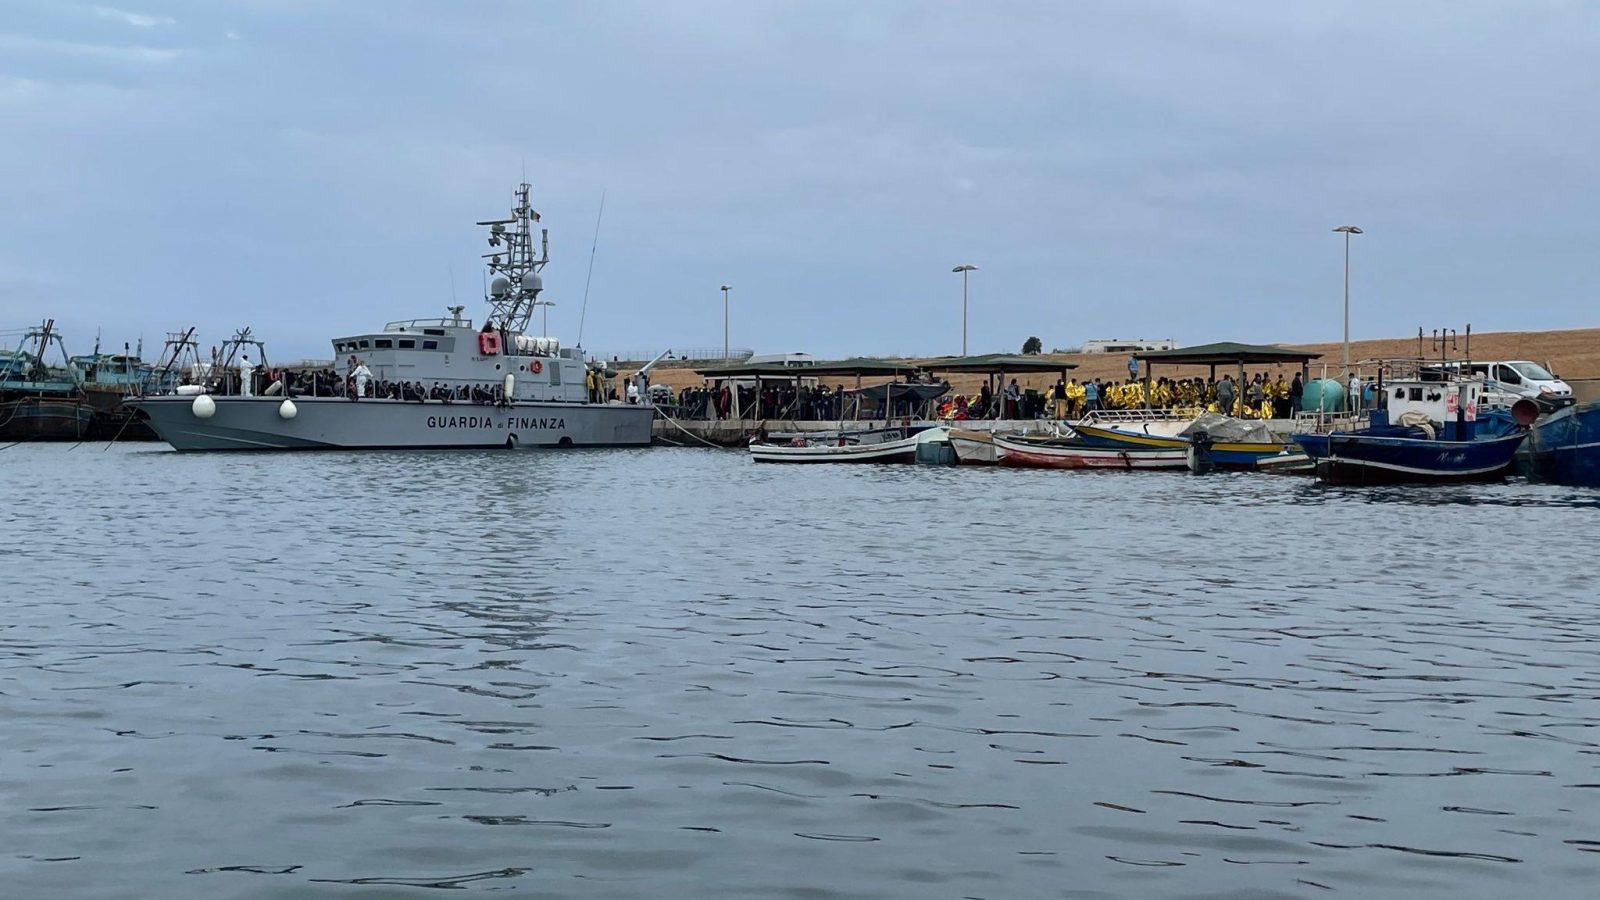 وصول 82 مهاجرا سريا تونسيا على متن قارب واحد إلى لامبيدوزا (فيديو)